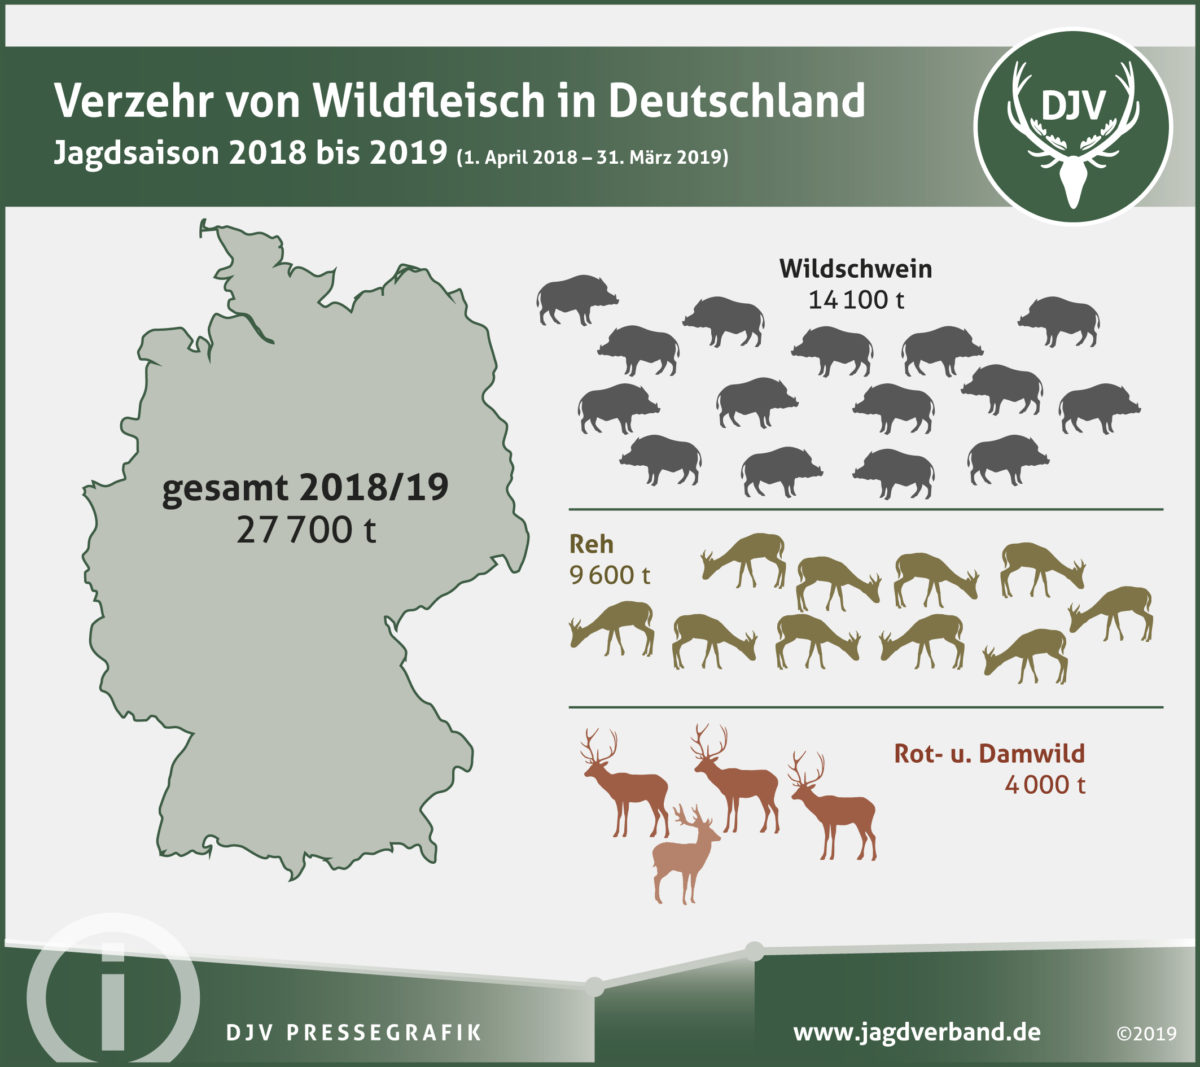 Wildfleischverzehr in Deutschland 2018/2019